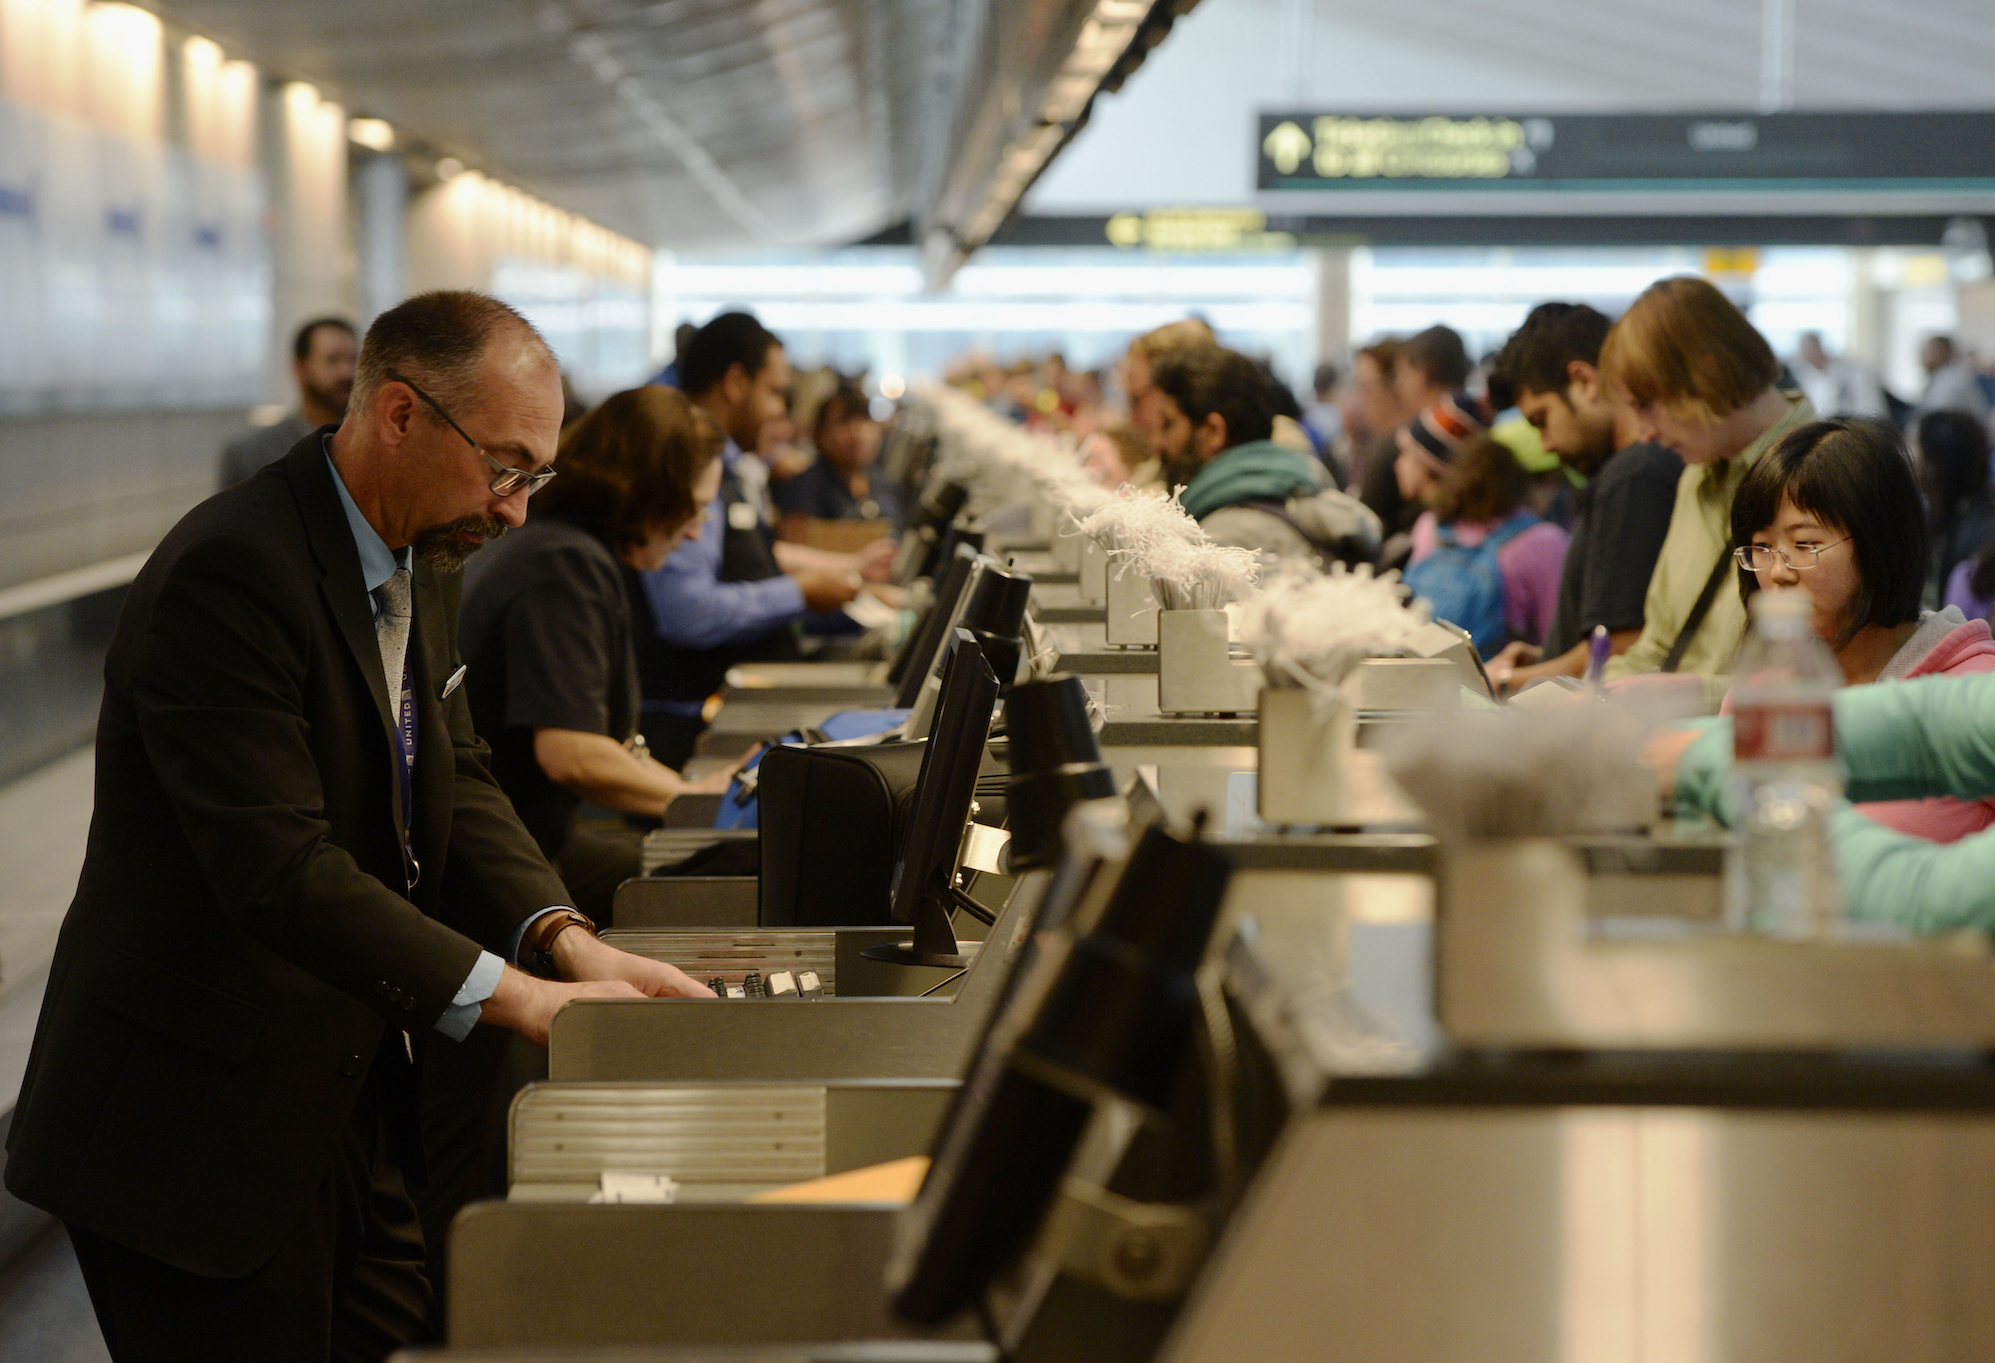 2015 yılında Denver Uluslararası Havaalanı'ndaki United Airlines bilet gişesinde uzun kuyruklar